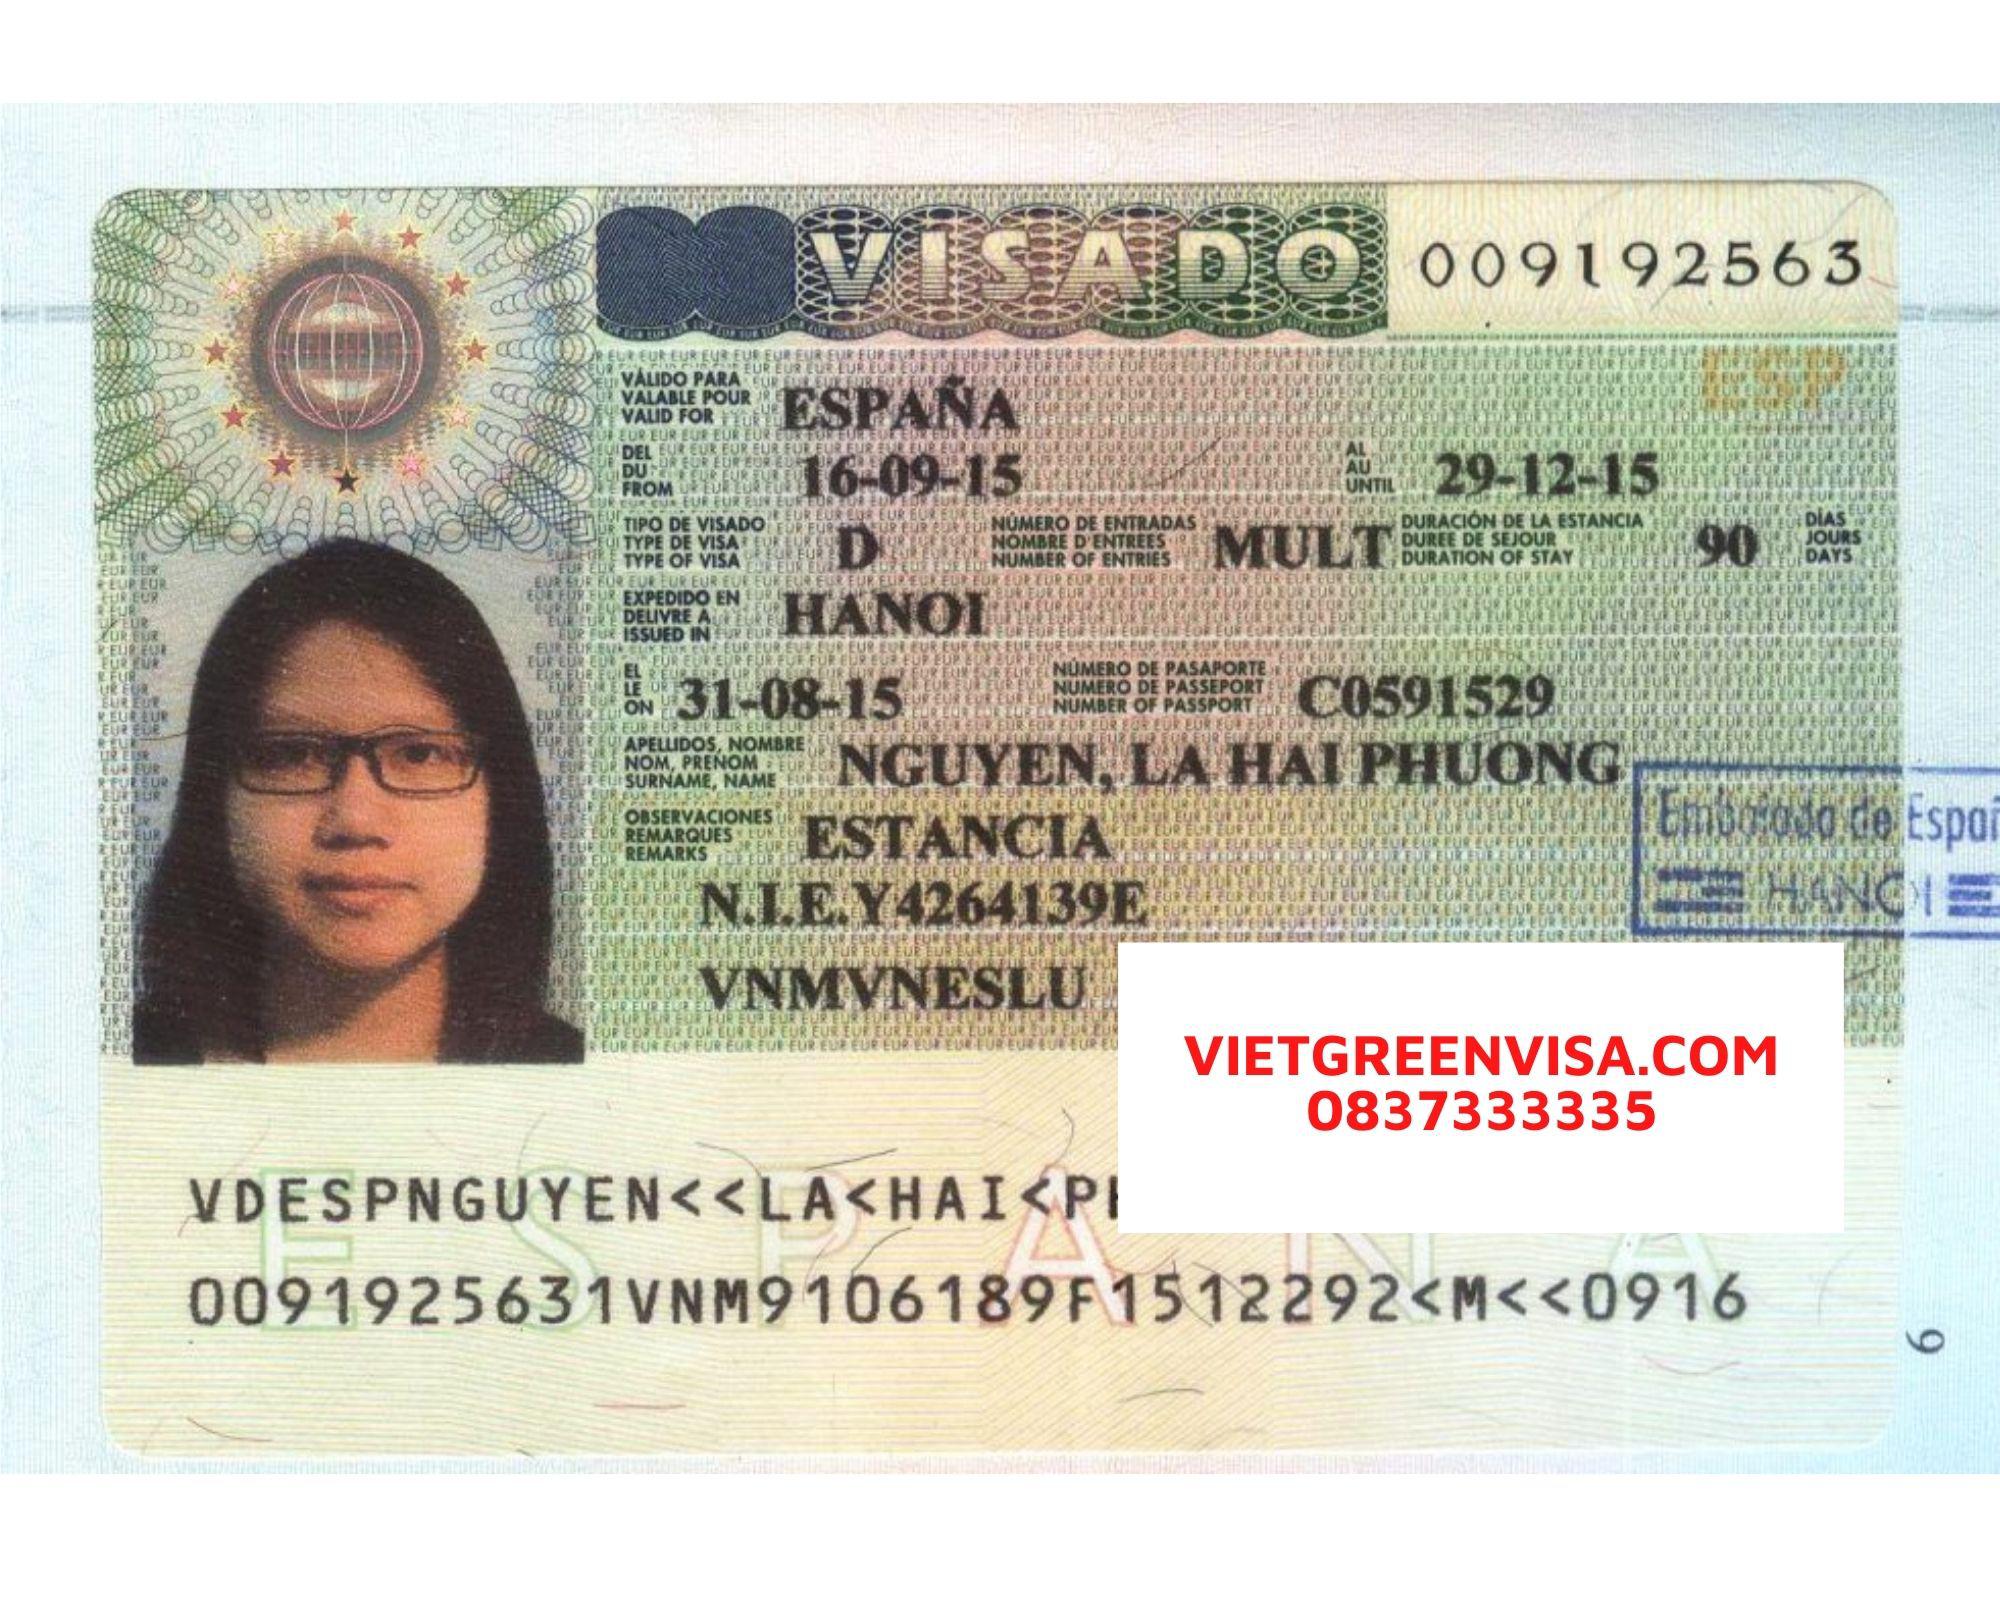 Viet Green Visa, visa du lịch Tây Ban Nha, làm visa Tây Ban Nha